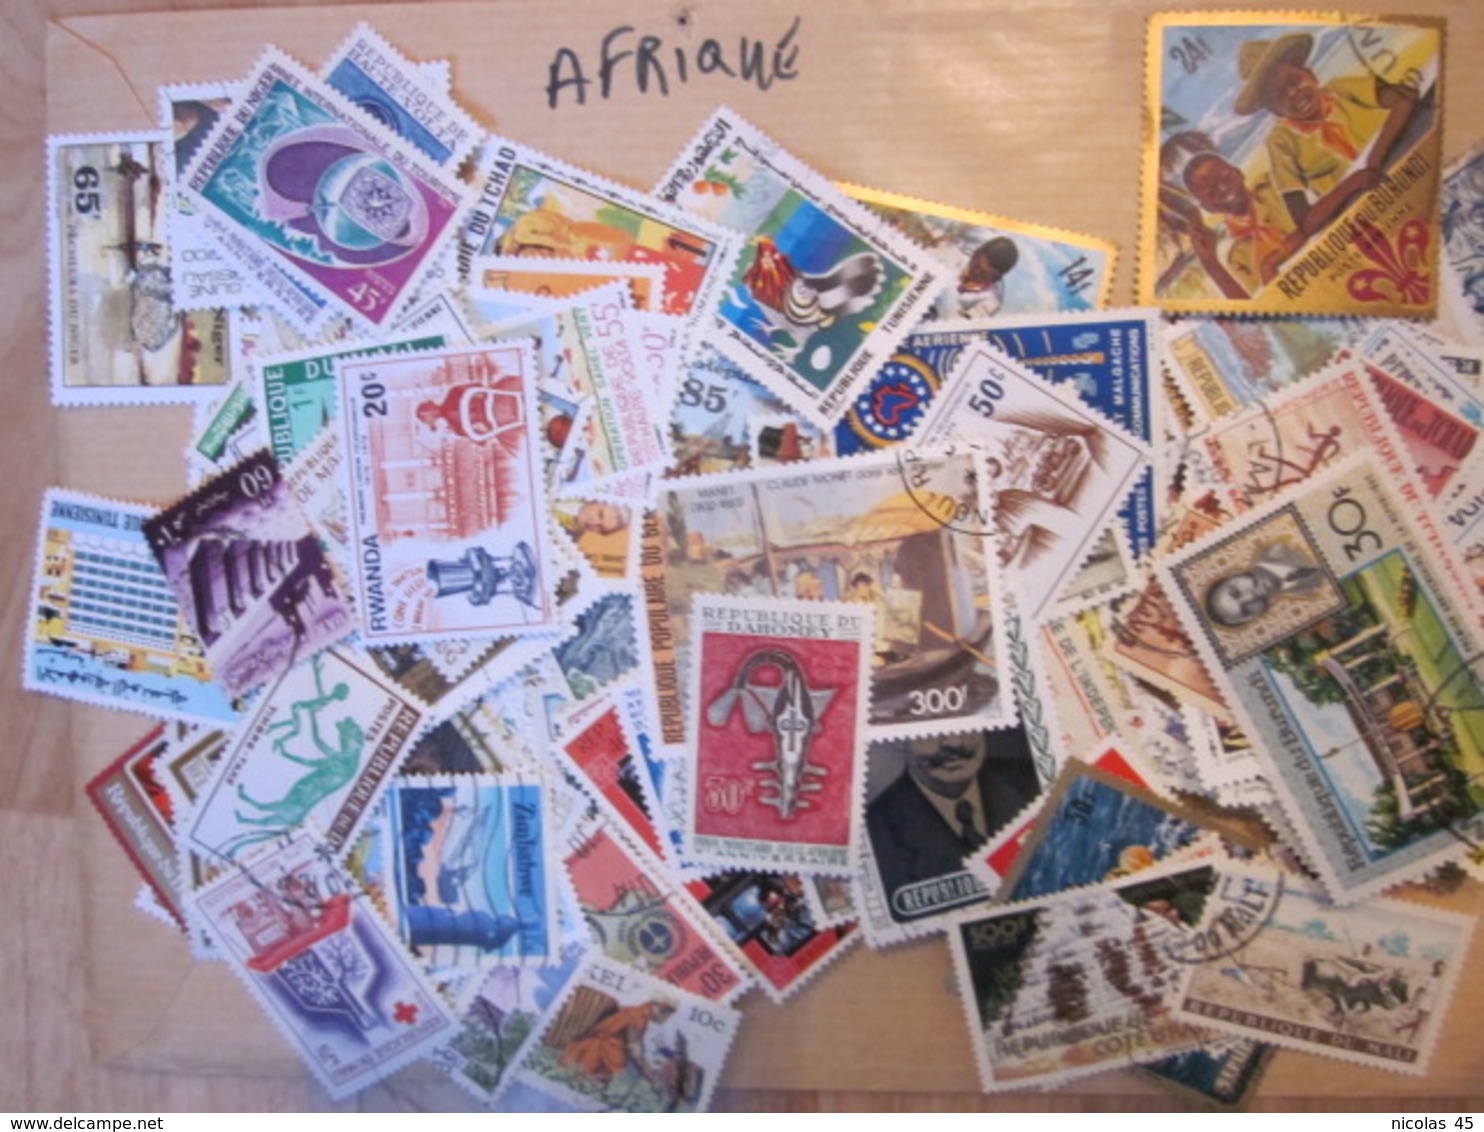 Énorme lot de timbres du monde (voir description)  A saisir